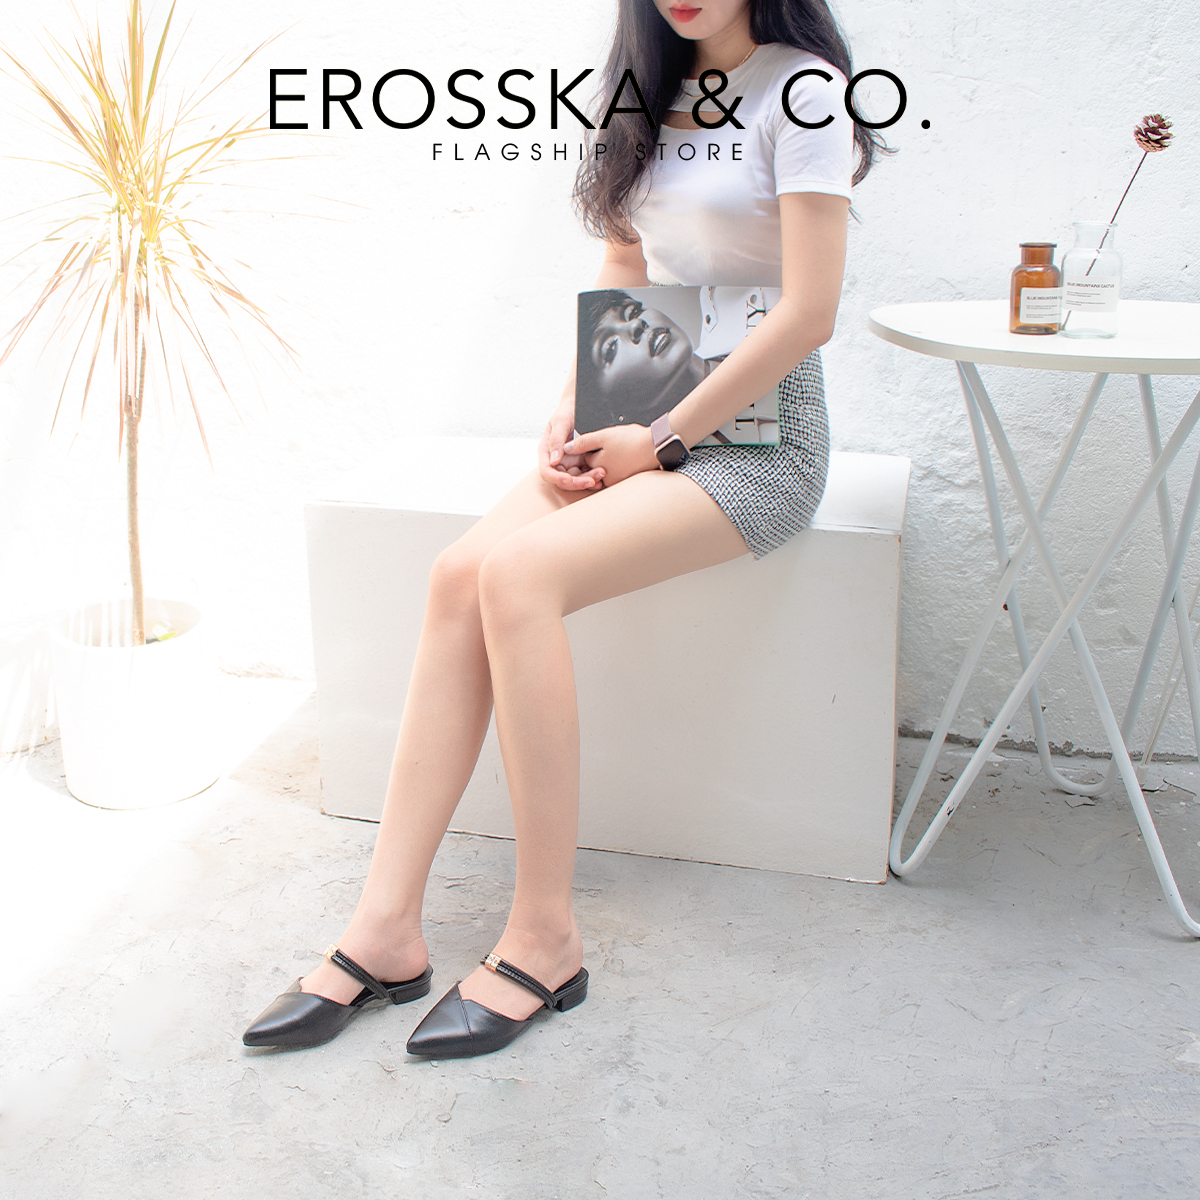 Giày Bít Mũi Phối Dây Thời Trang Erosska EL004 (Màu đen)